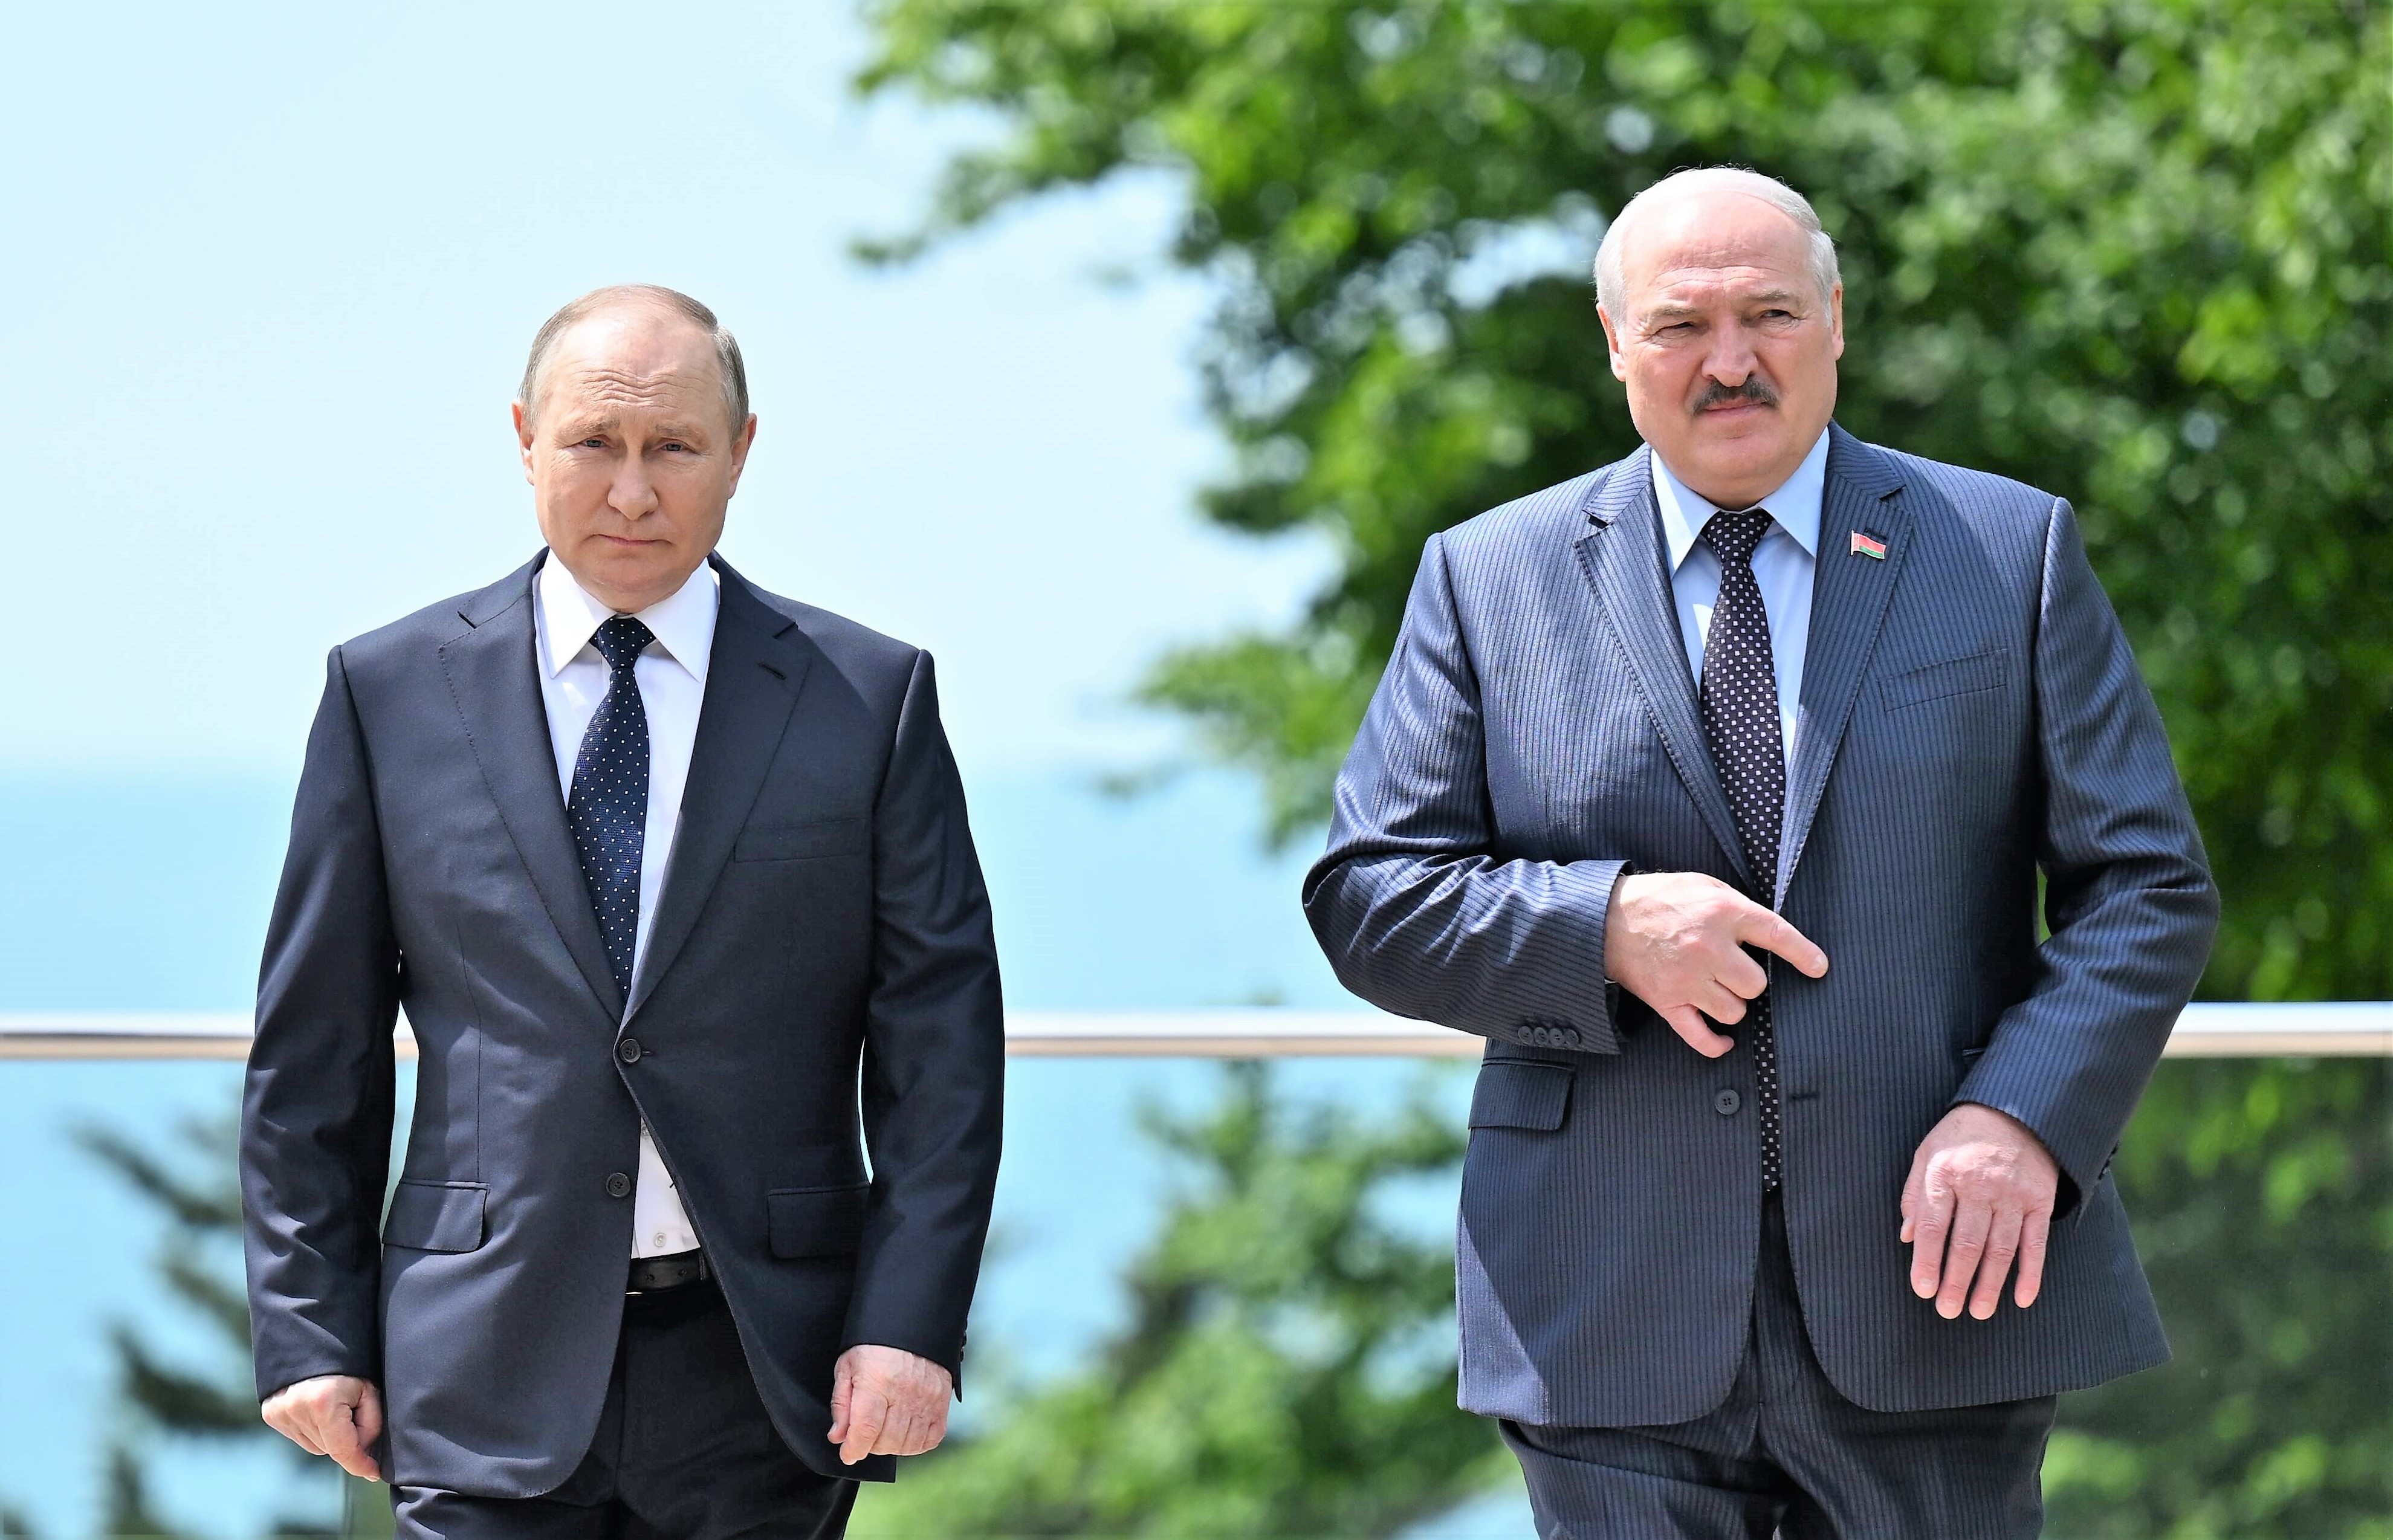 EILMELDUNG☢️ Russland verlegt Atomwaffen nach Belarus - Diktator Lukaschenko bestätigt den Vorgang!